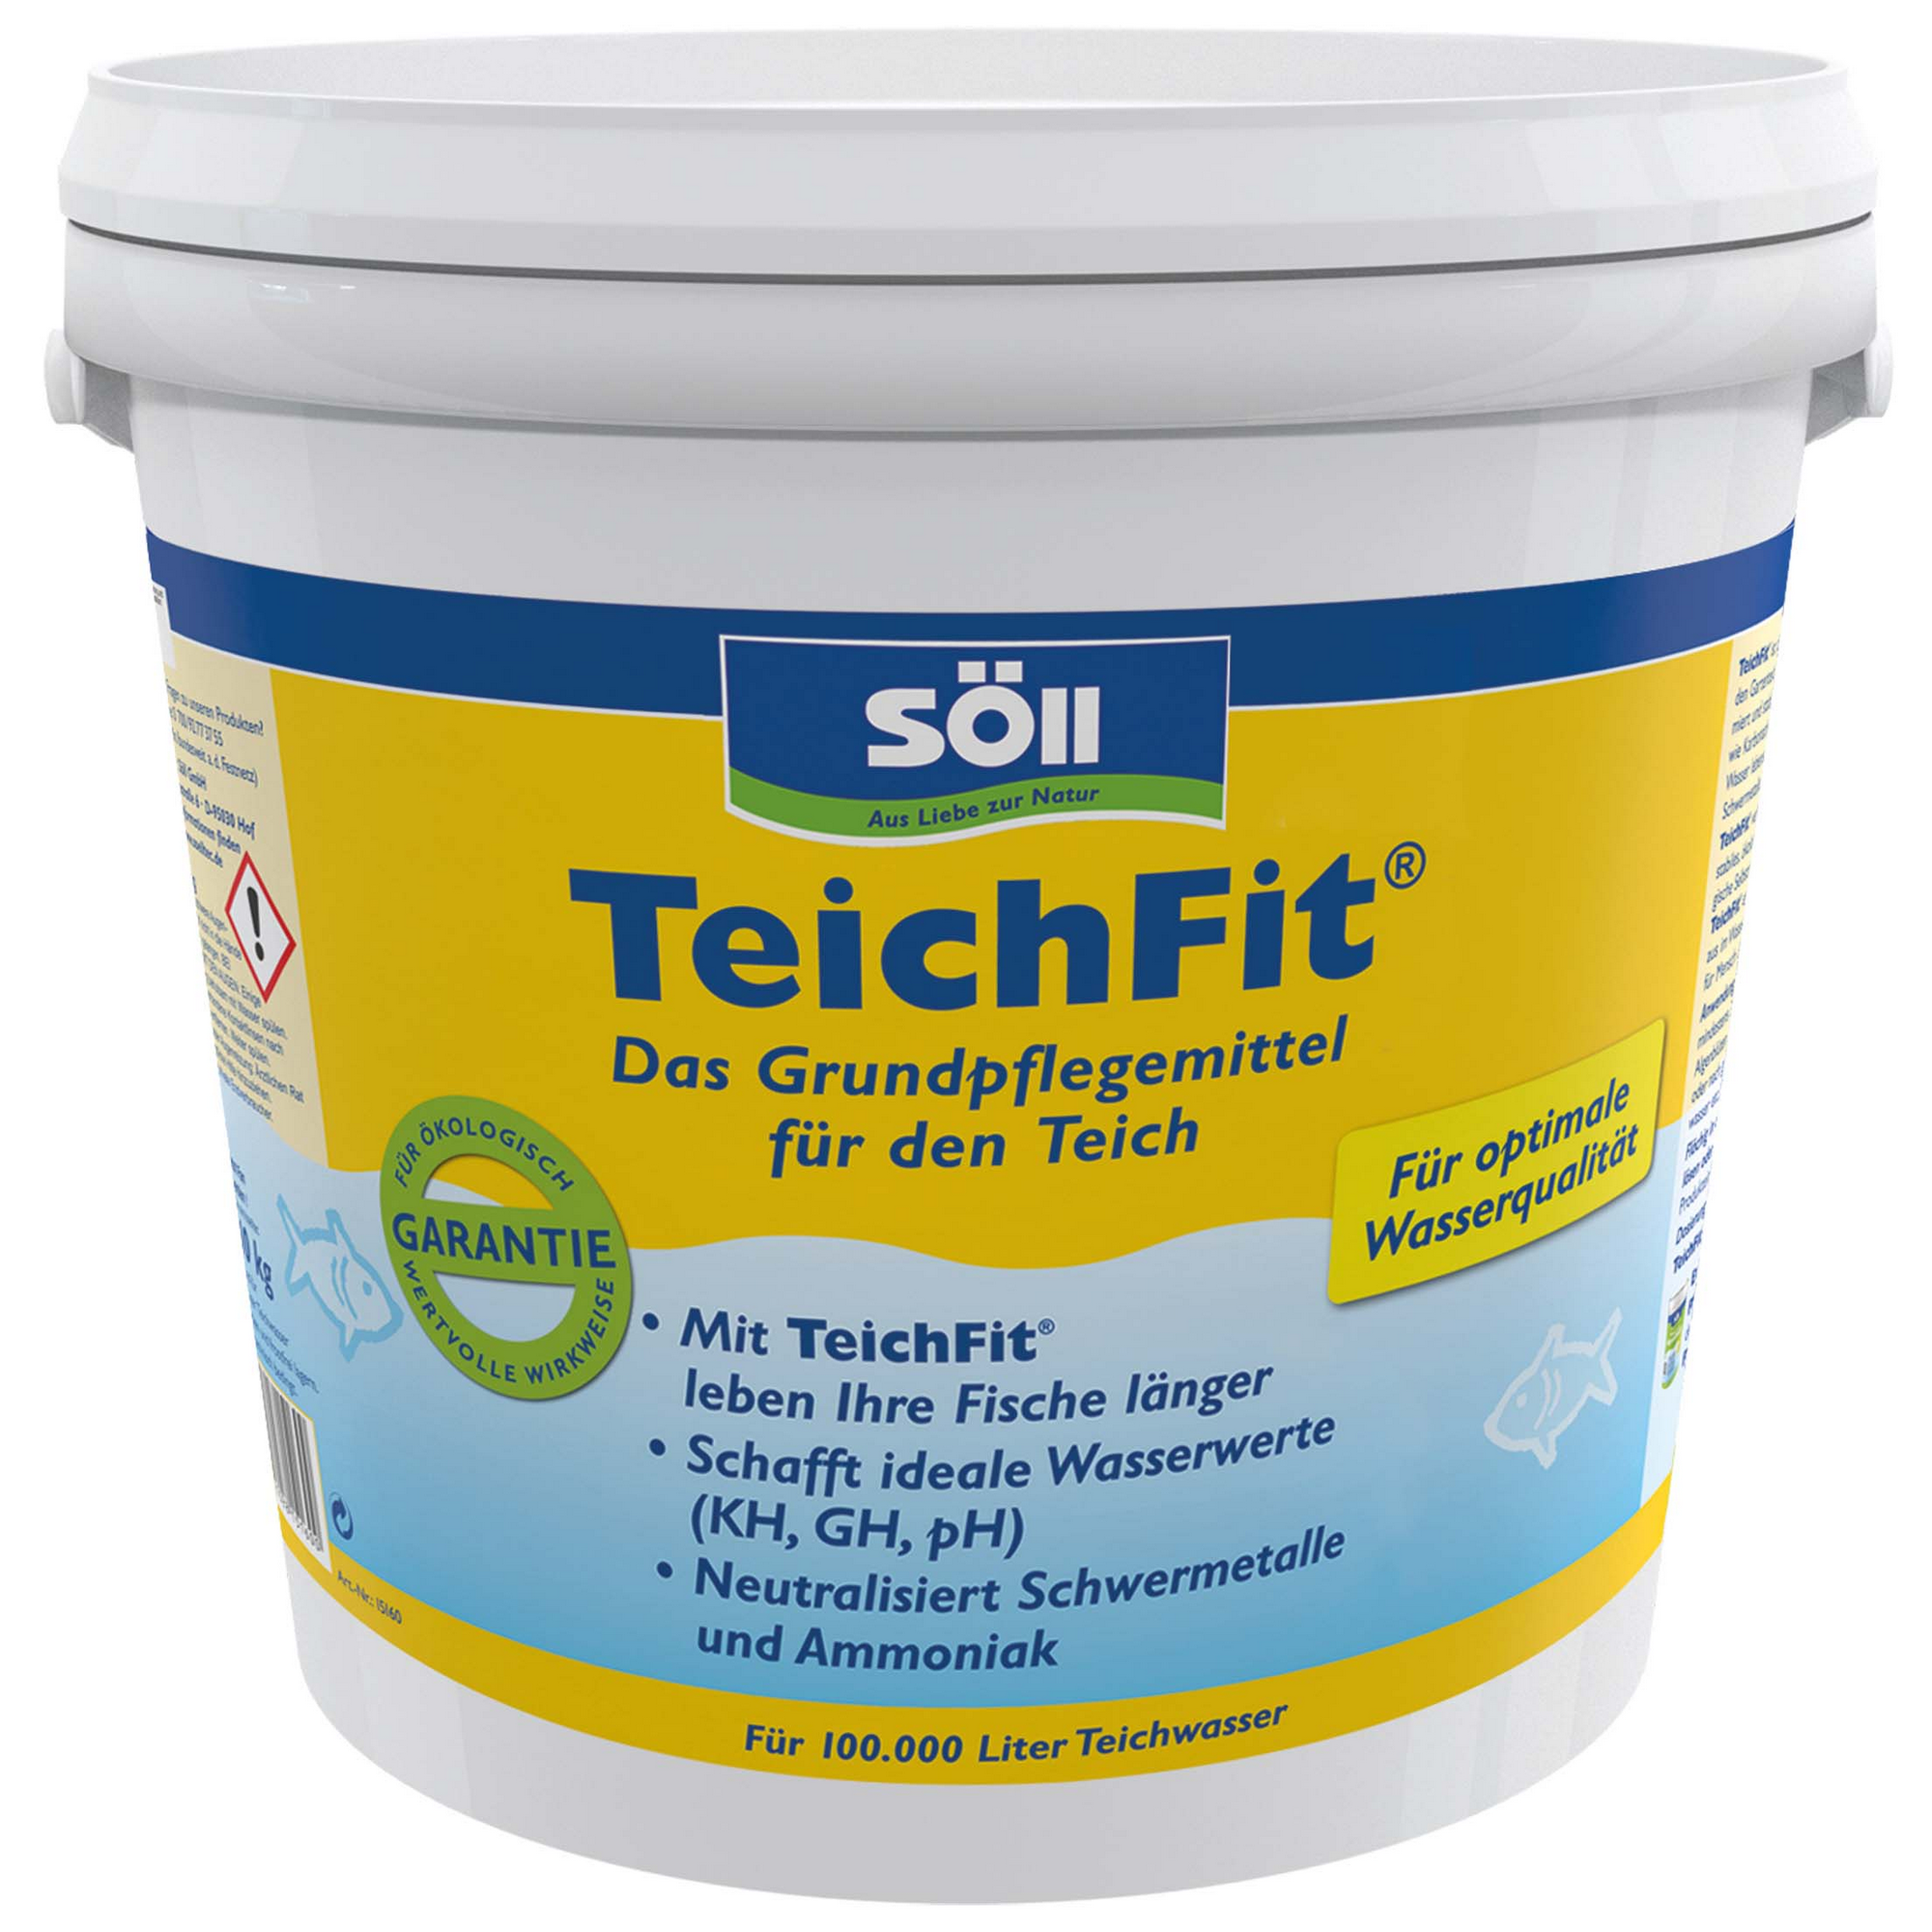 TeichFit 10 kg + product picture